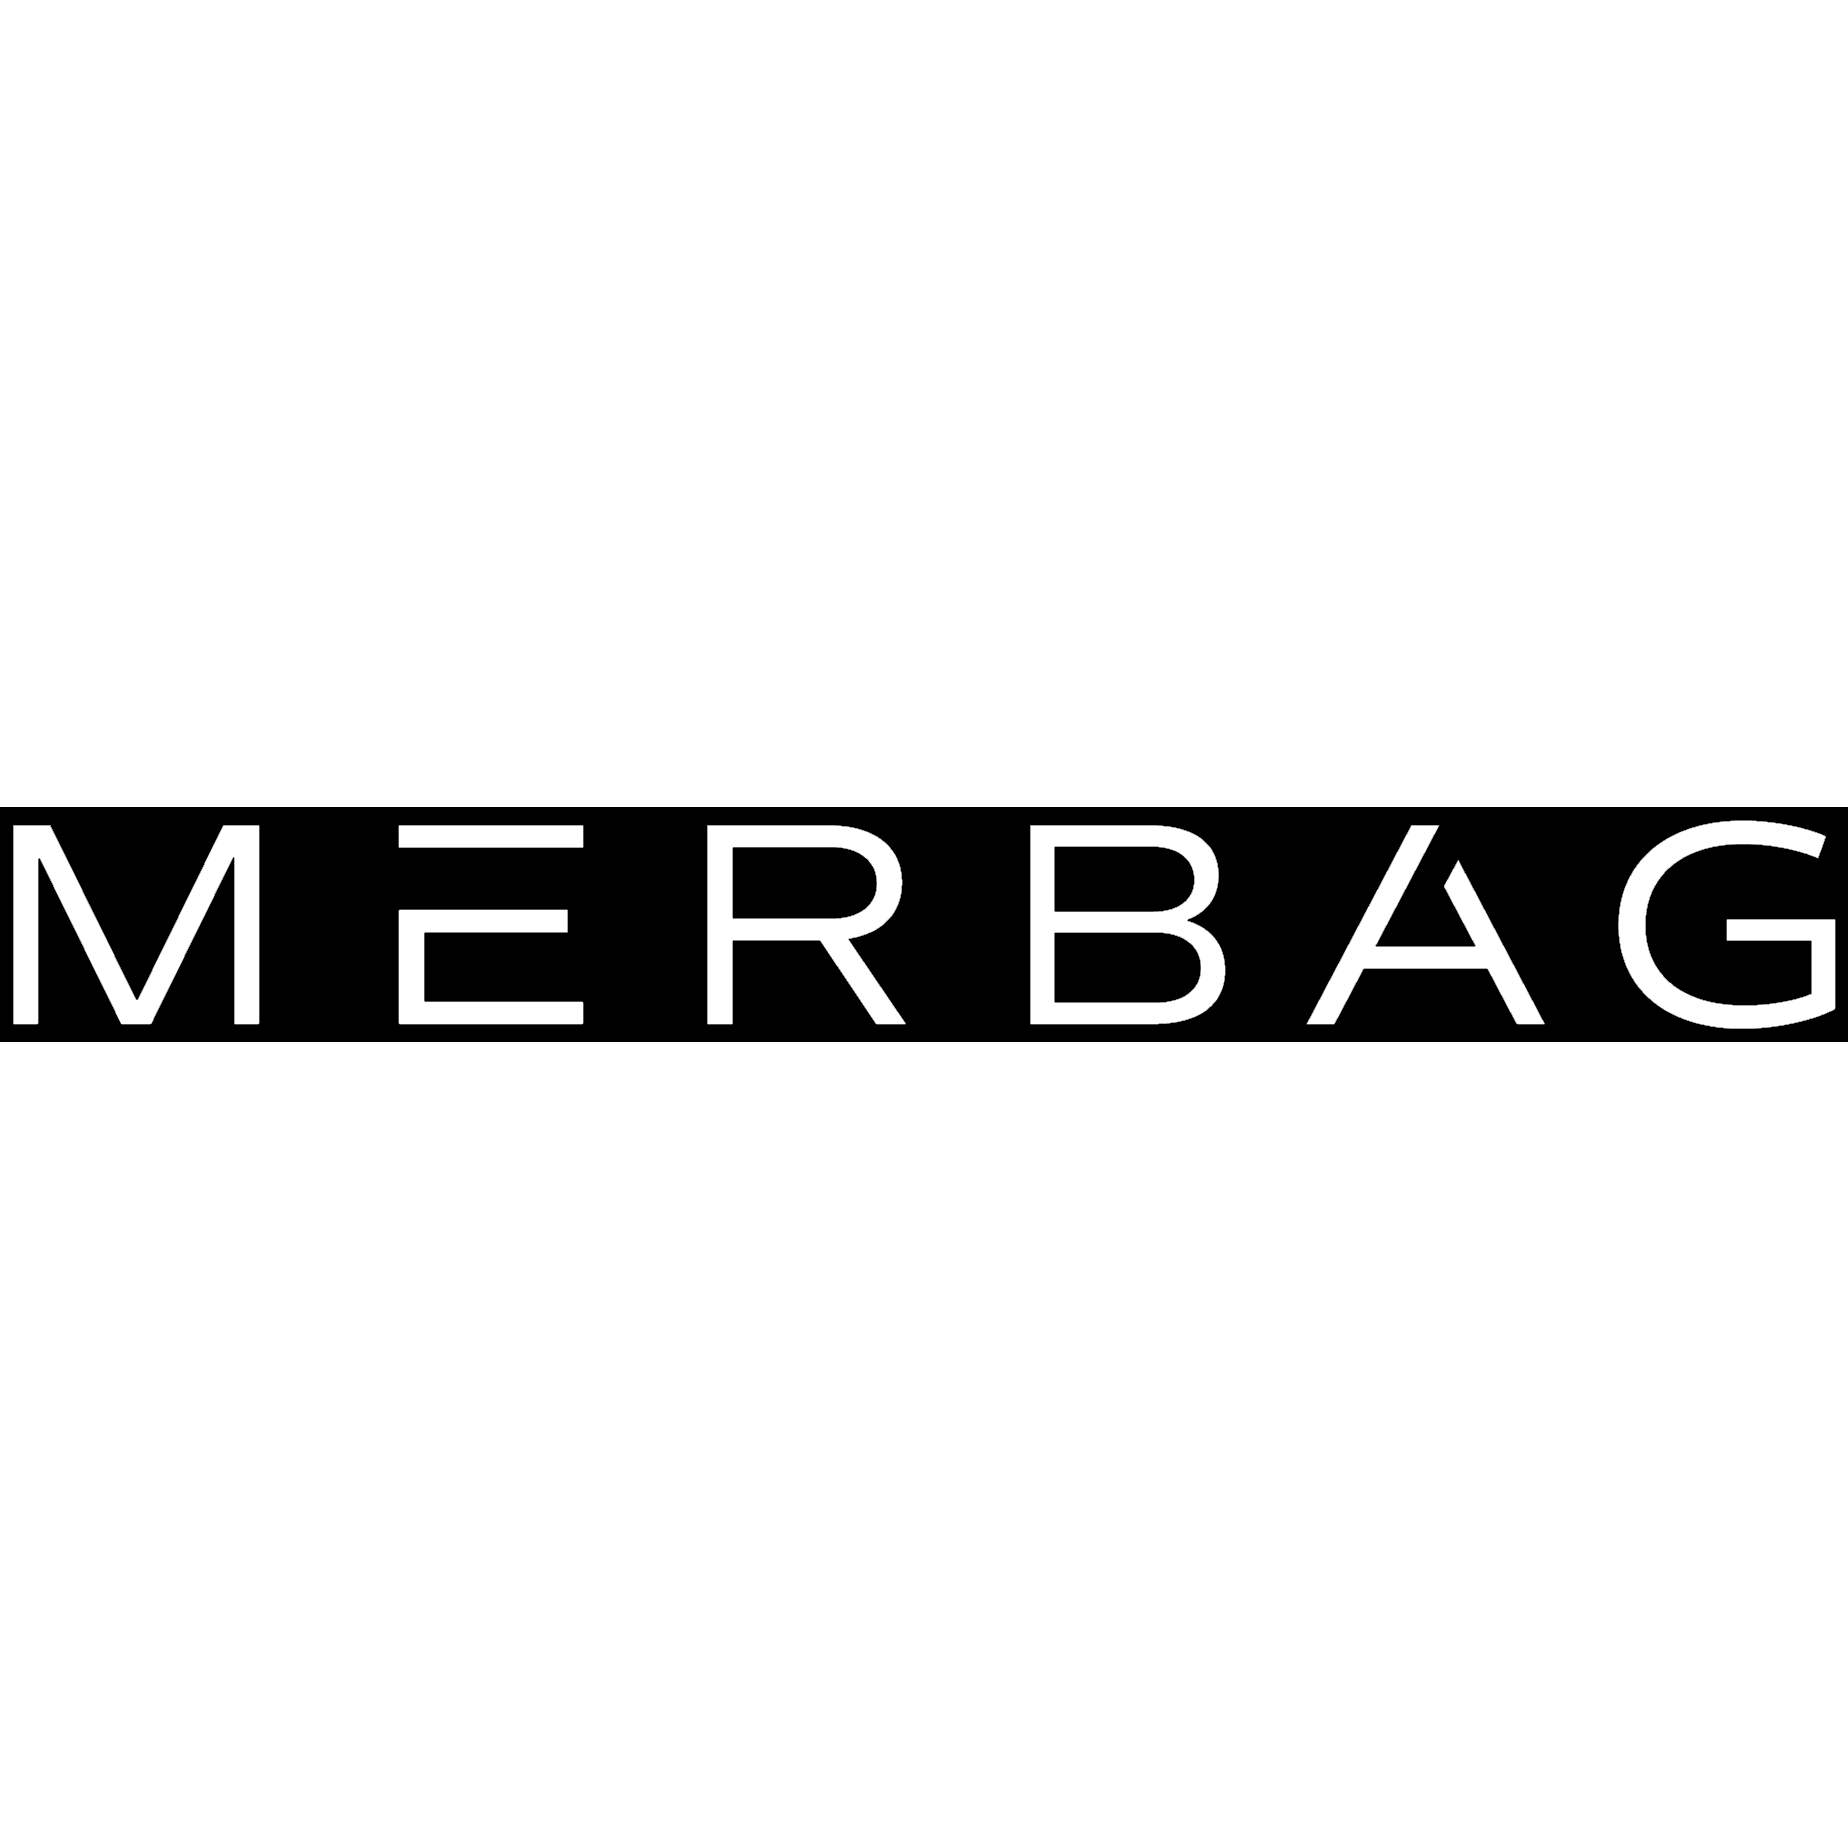 Mercedes-Benz Merbag Wittlich in Wittlich - Logo